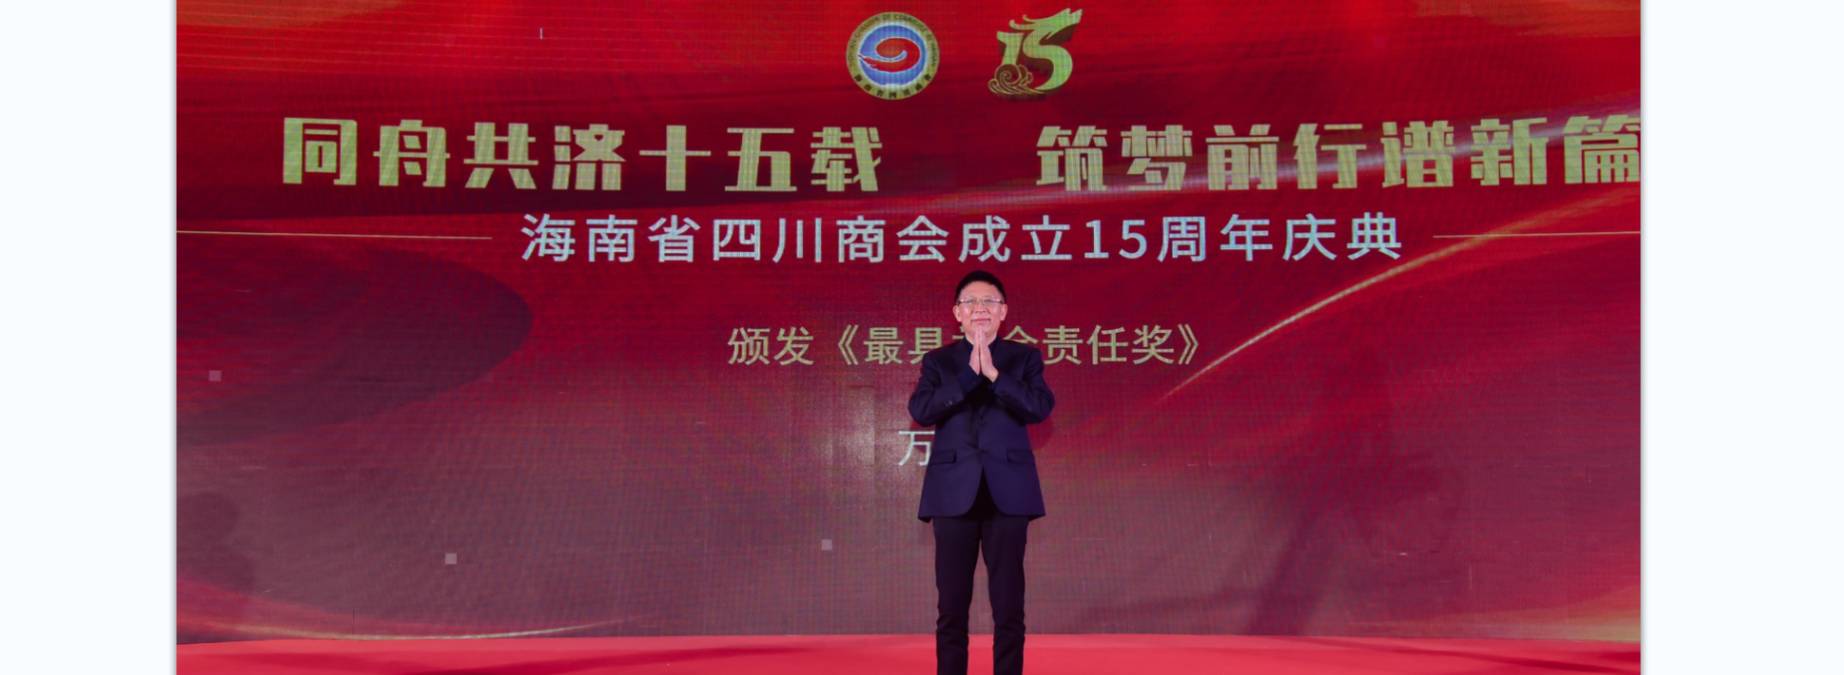 海南省四川商会成立15周年庆典大会在海口隆重举行